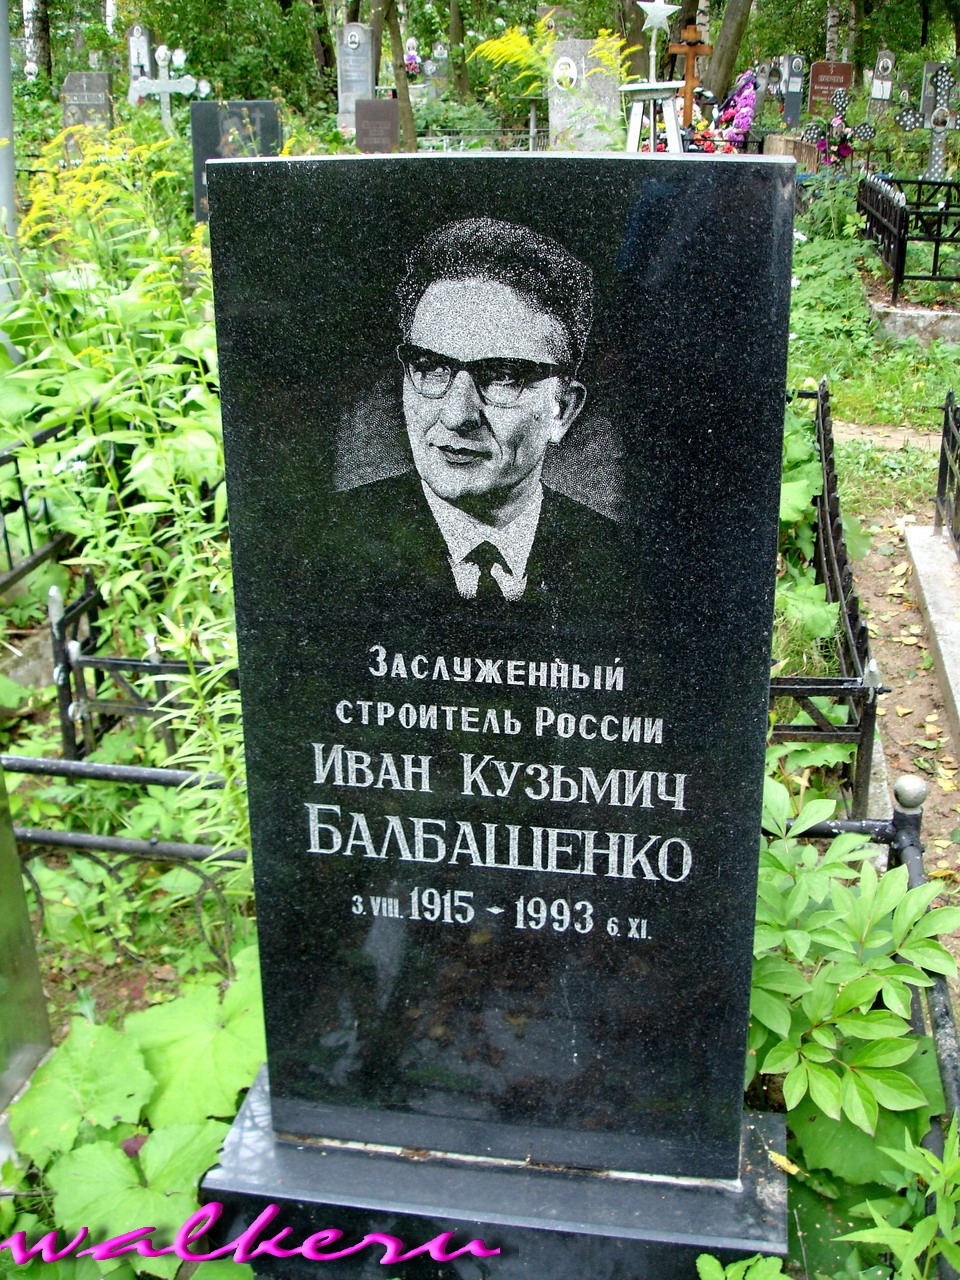 Могила Балбашенко И.К. на Красельском кладбище